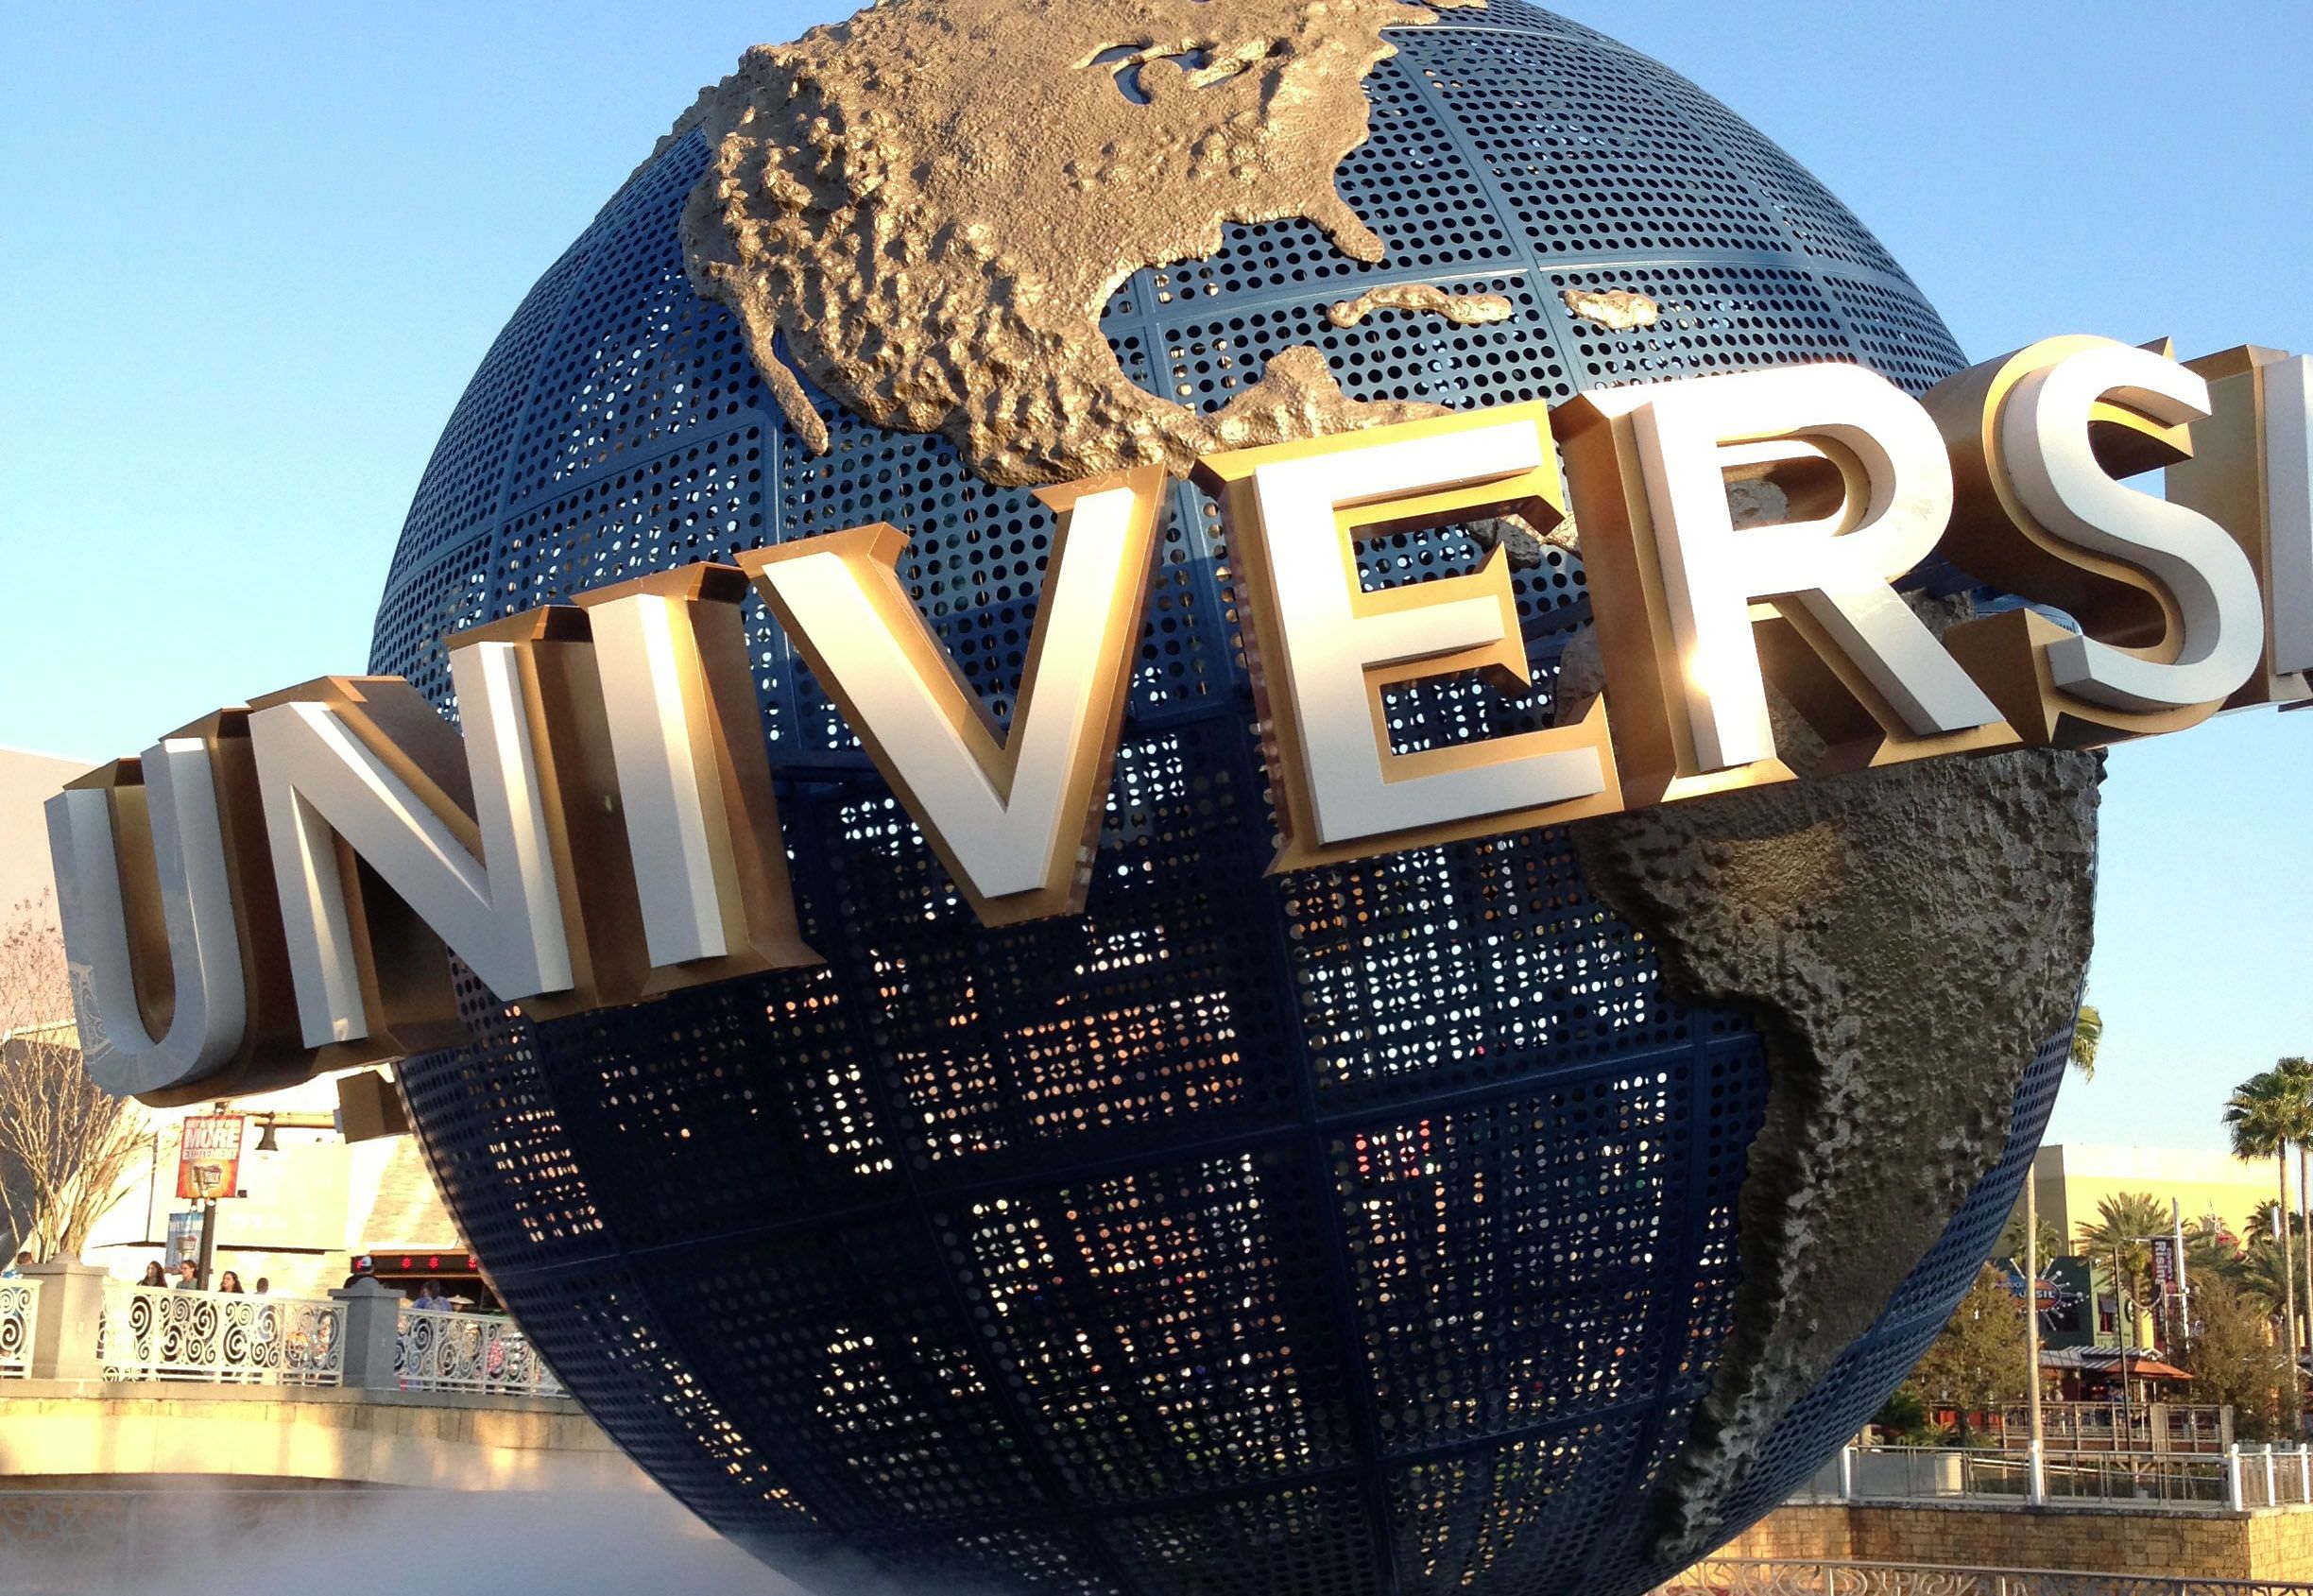 Universal Studios Florida Orlando Florida United States  Theme Park  Review  Condé Nast Traveler